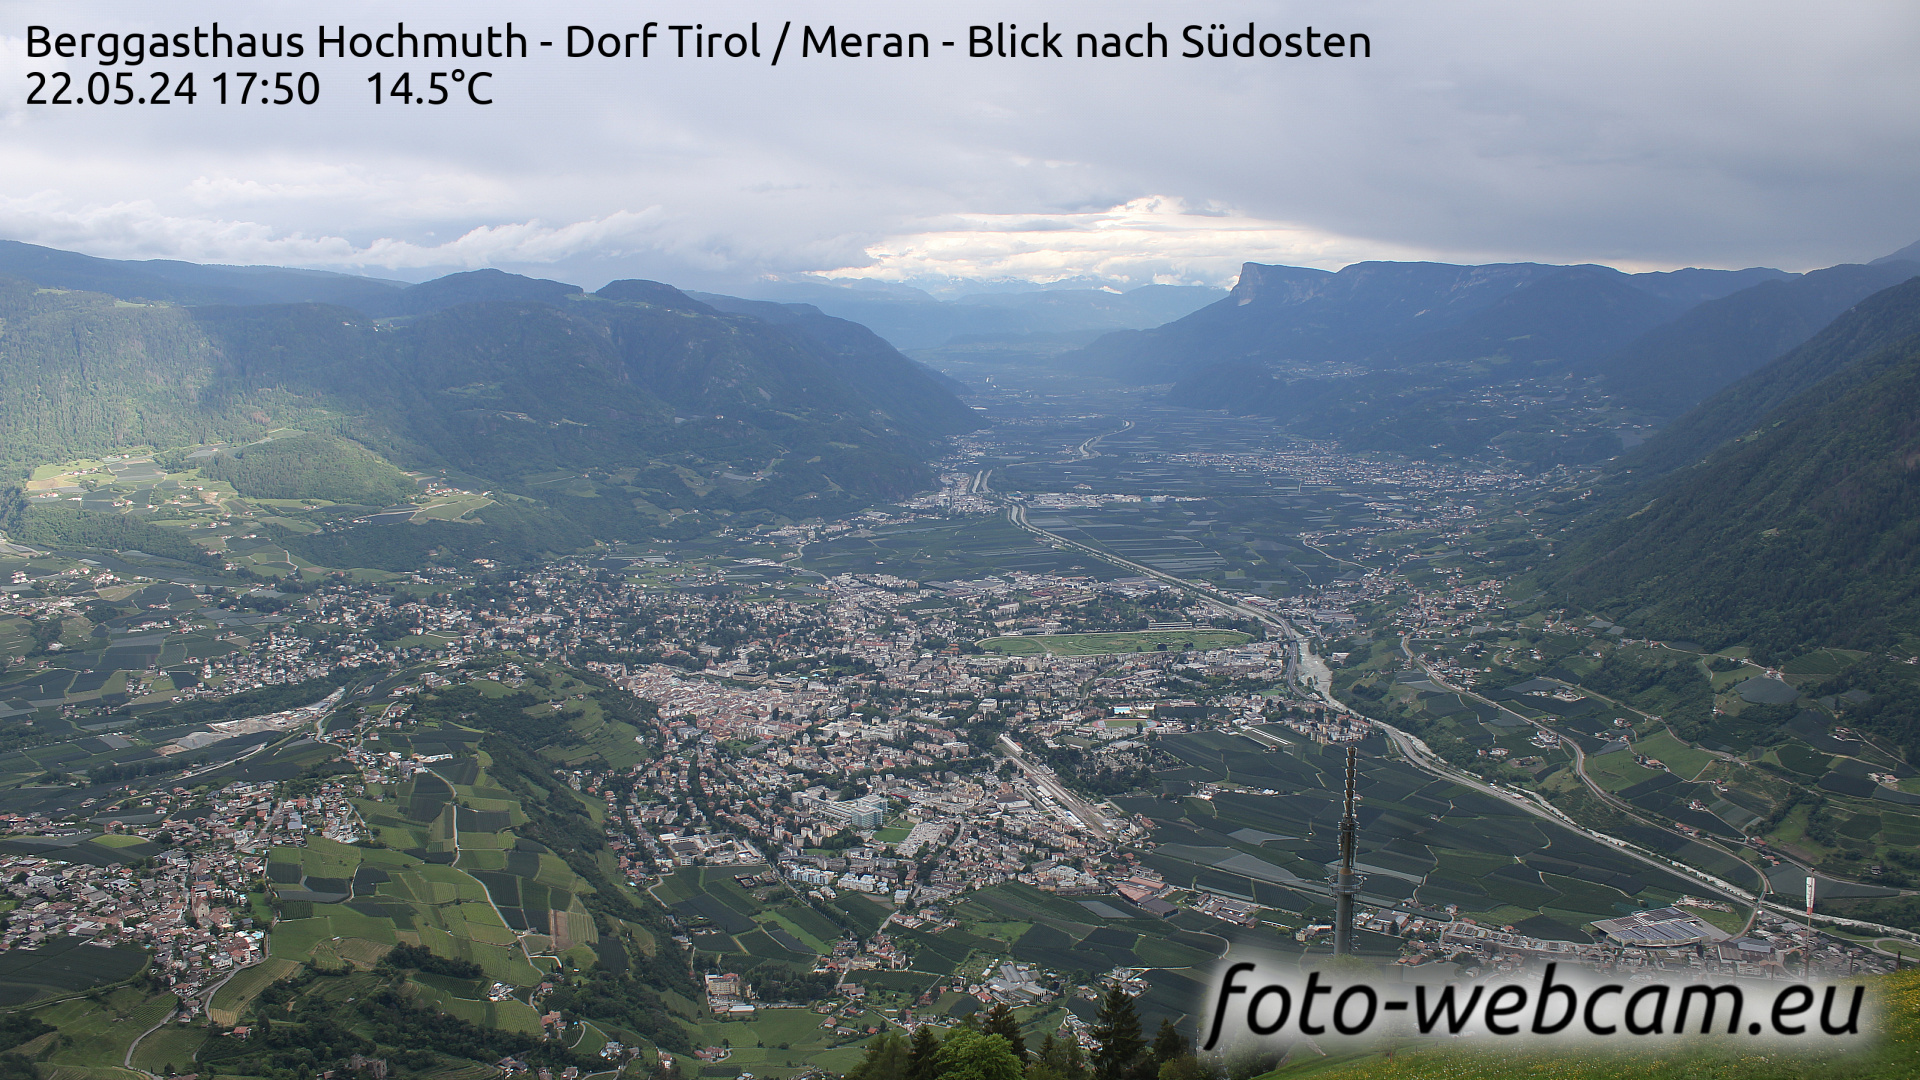 Dorf Tirol Di. 17:56